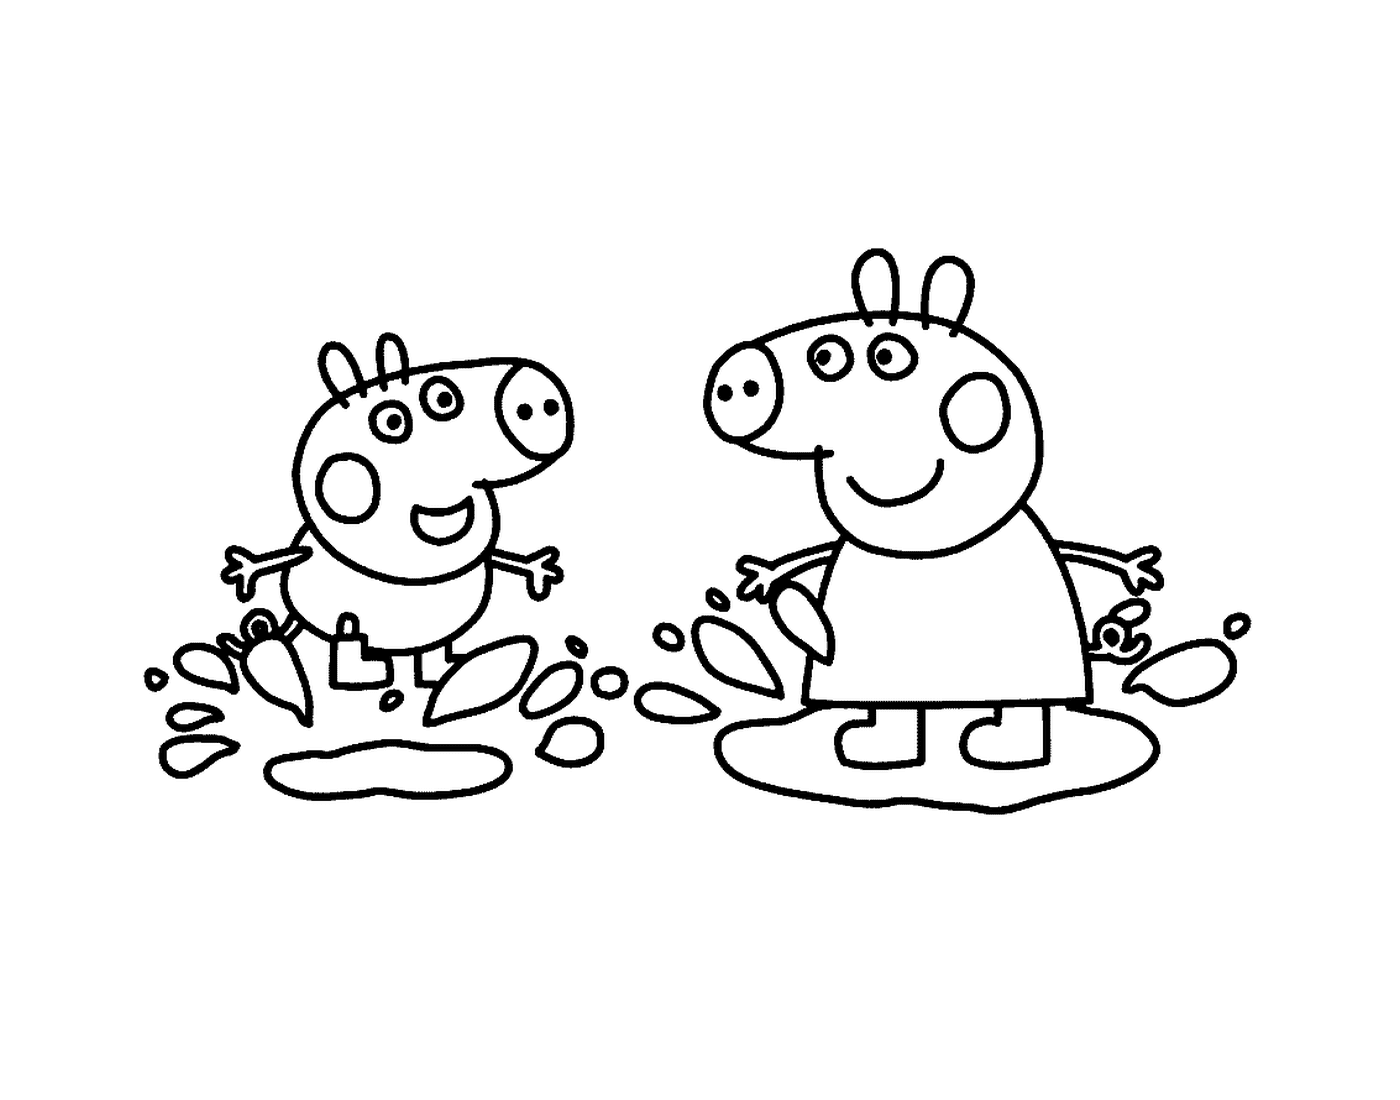  Un paio di personaggi di Peppa Pig fianco a fianco 